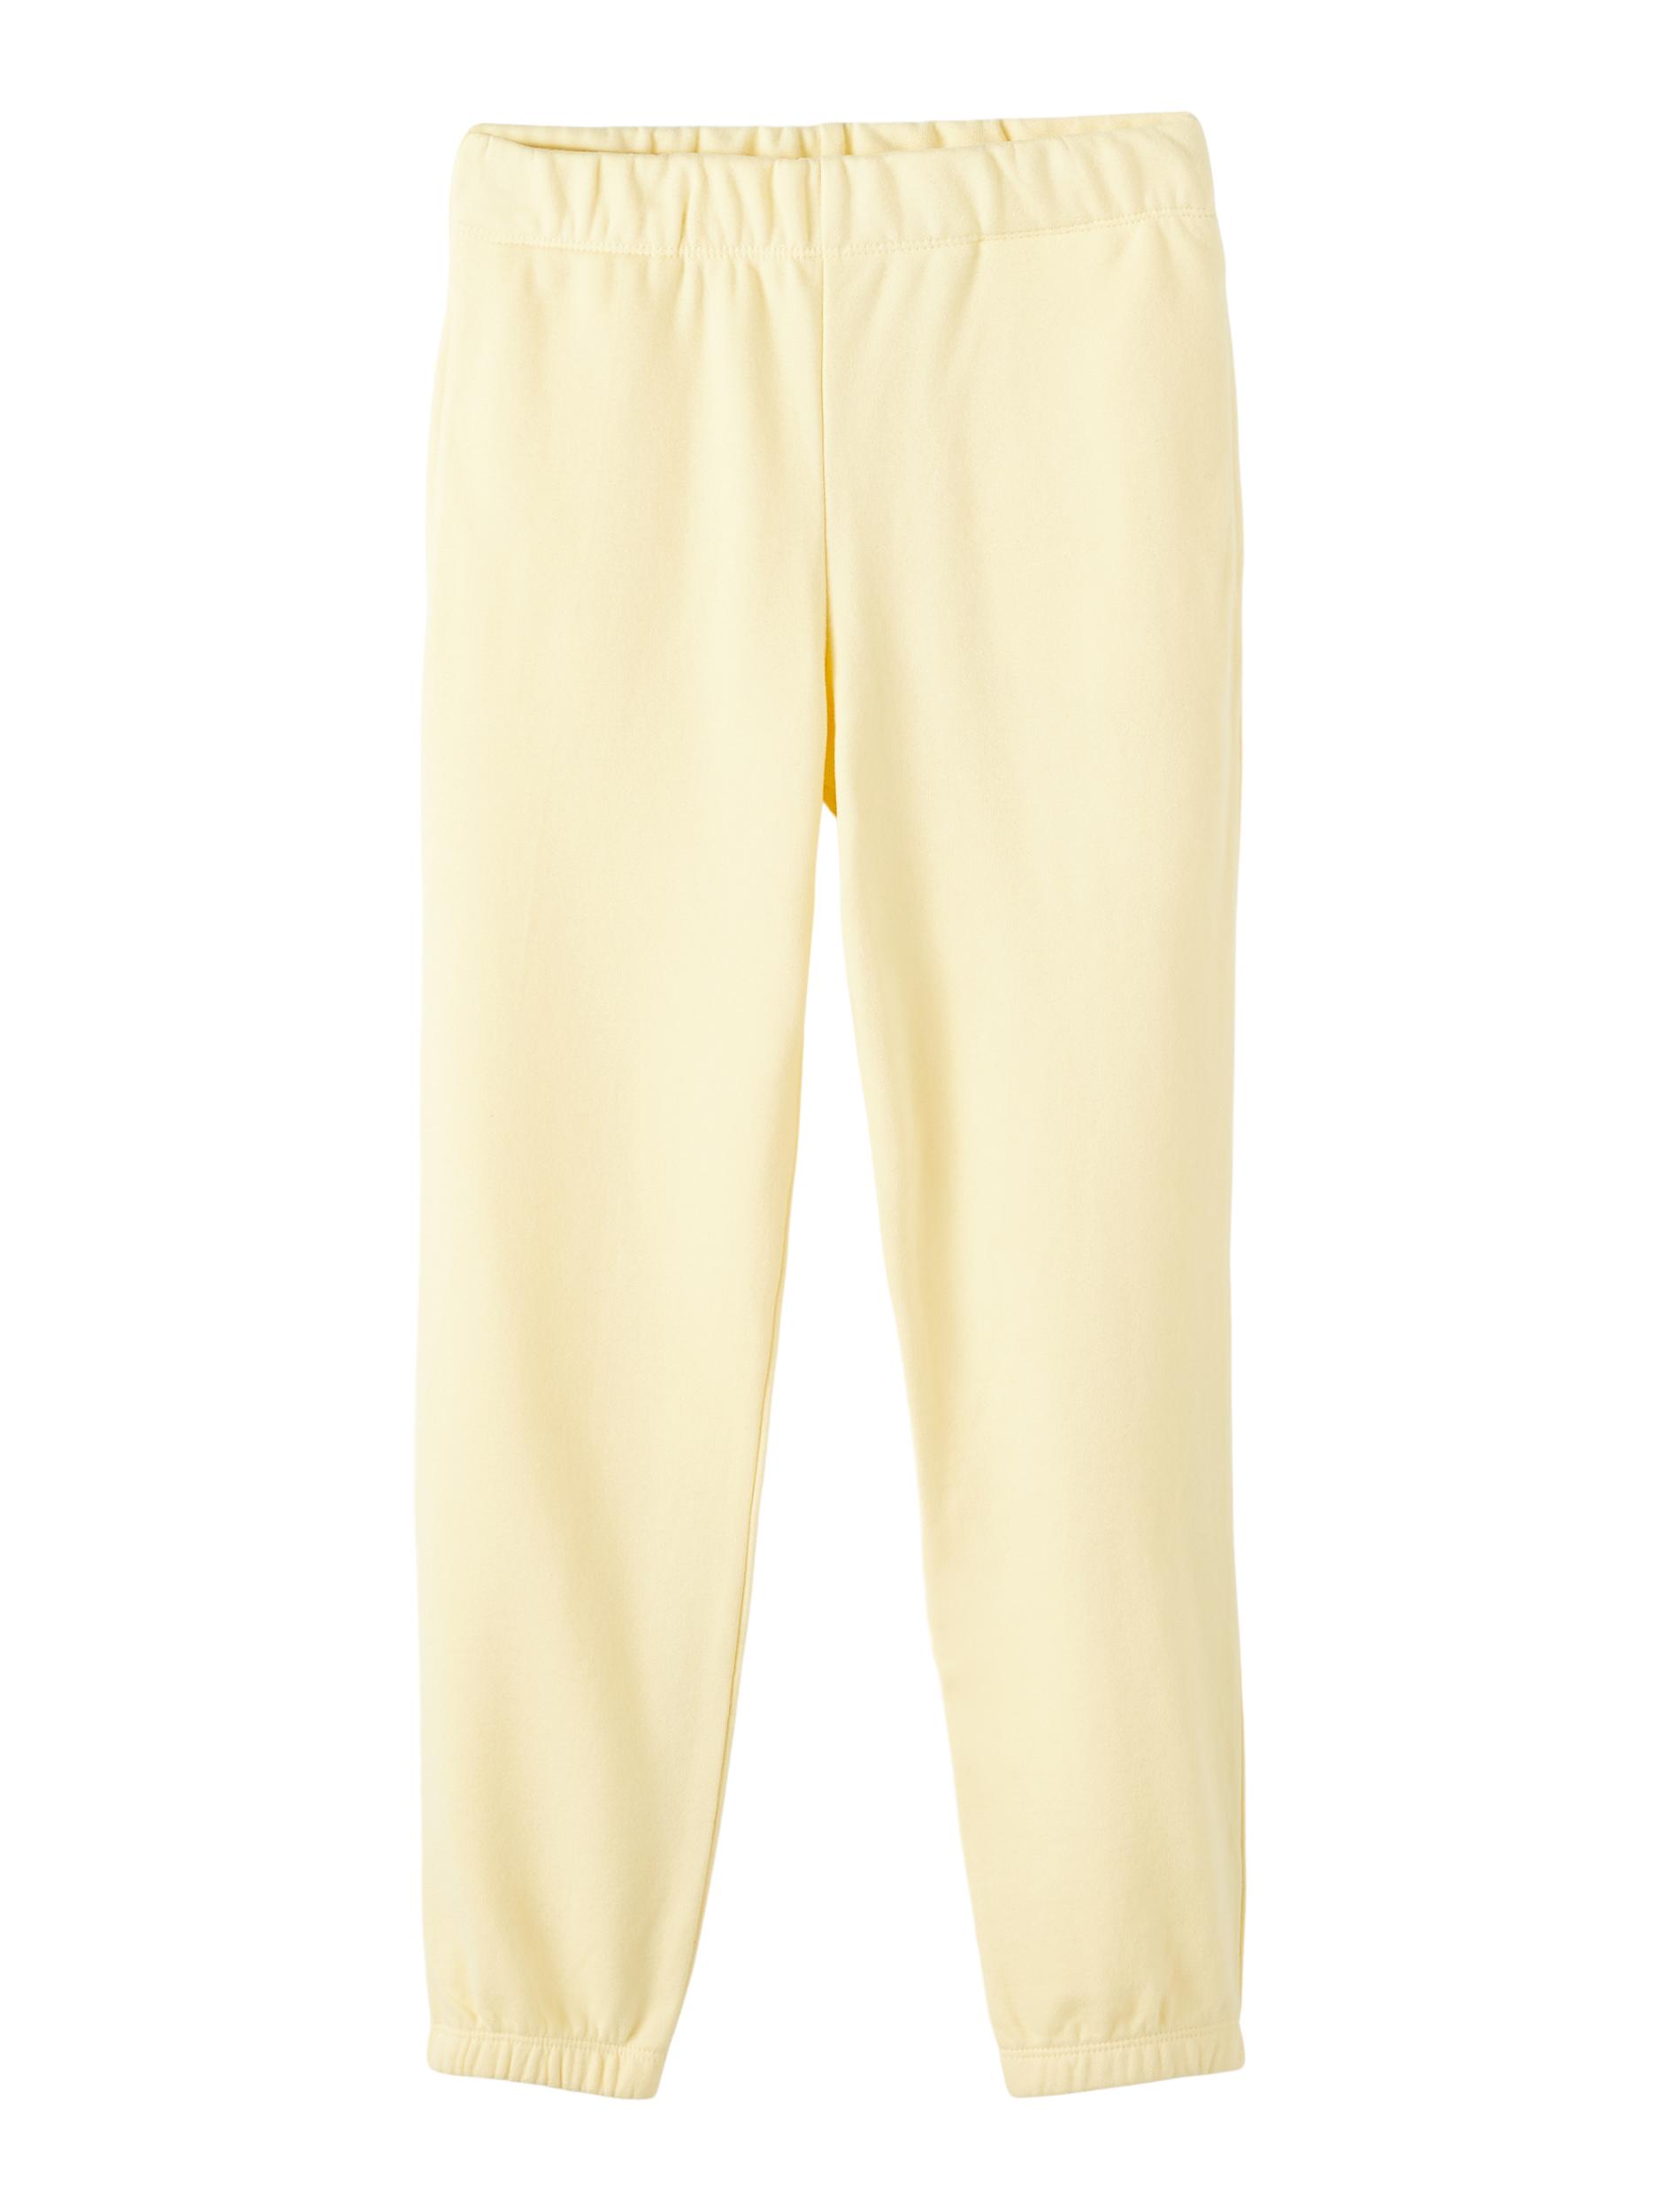  Sweatpants, Double Cream, 134 cm